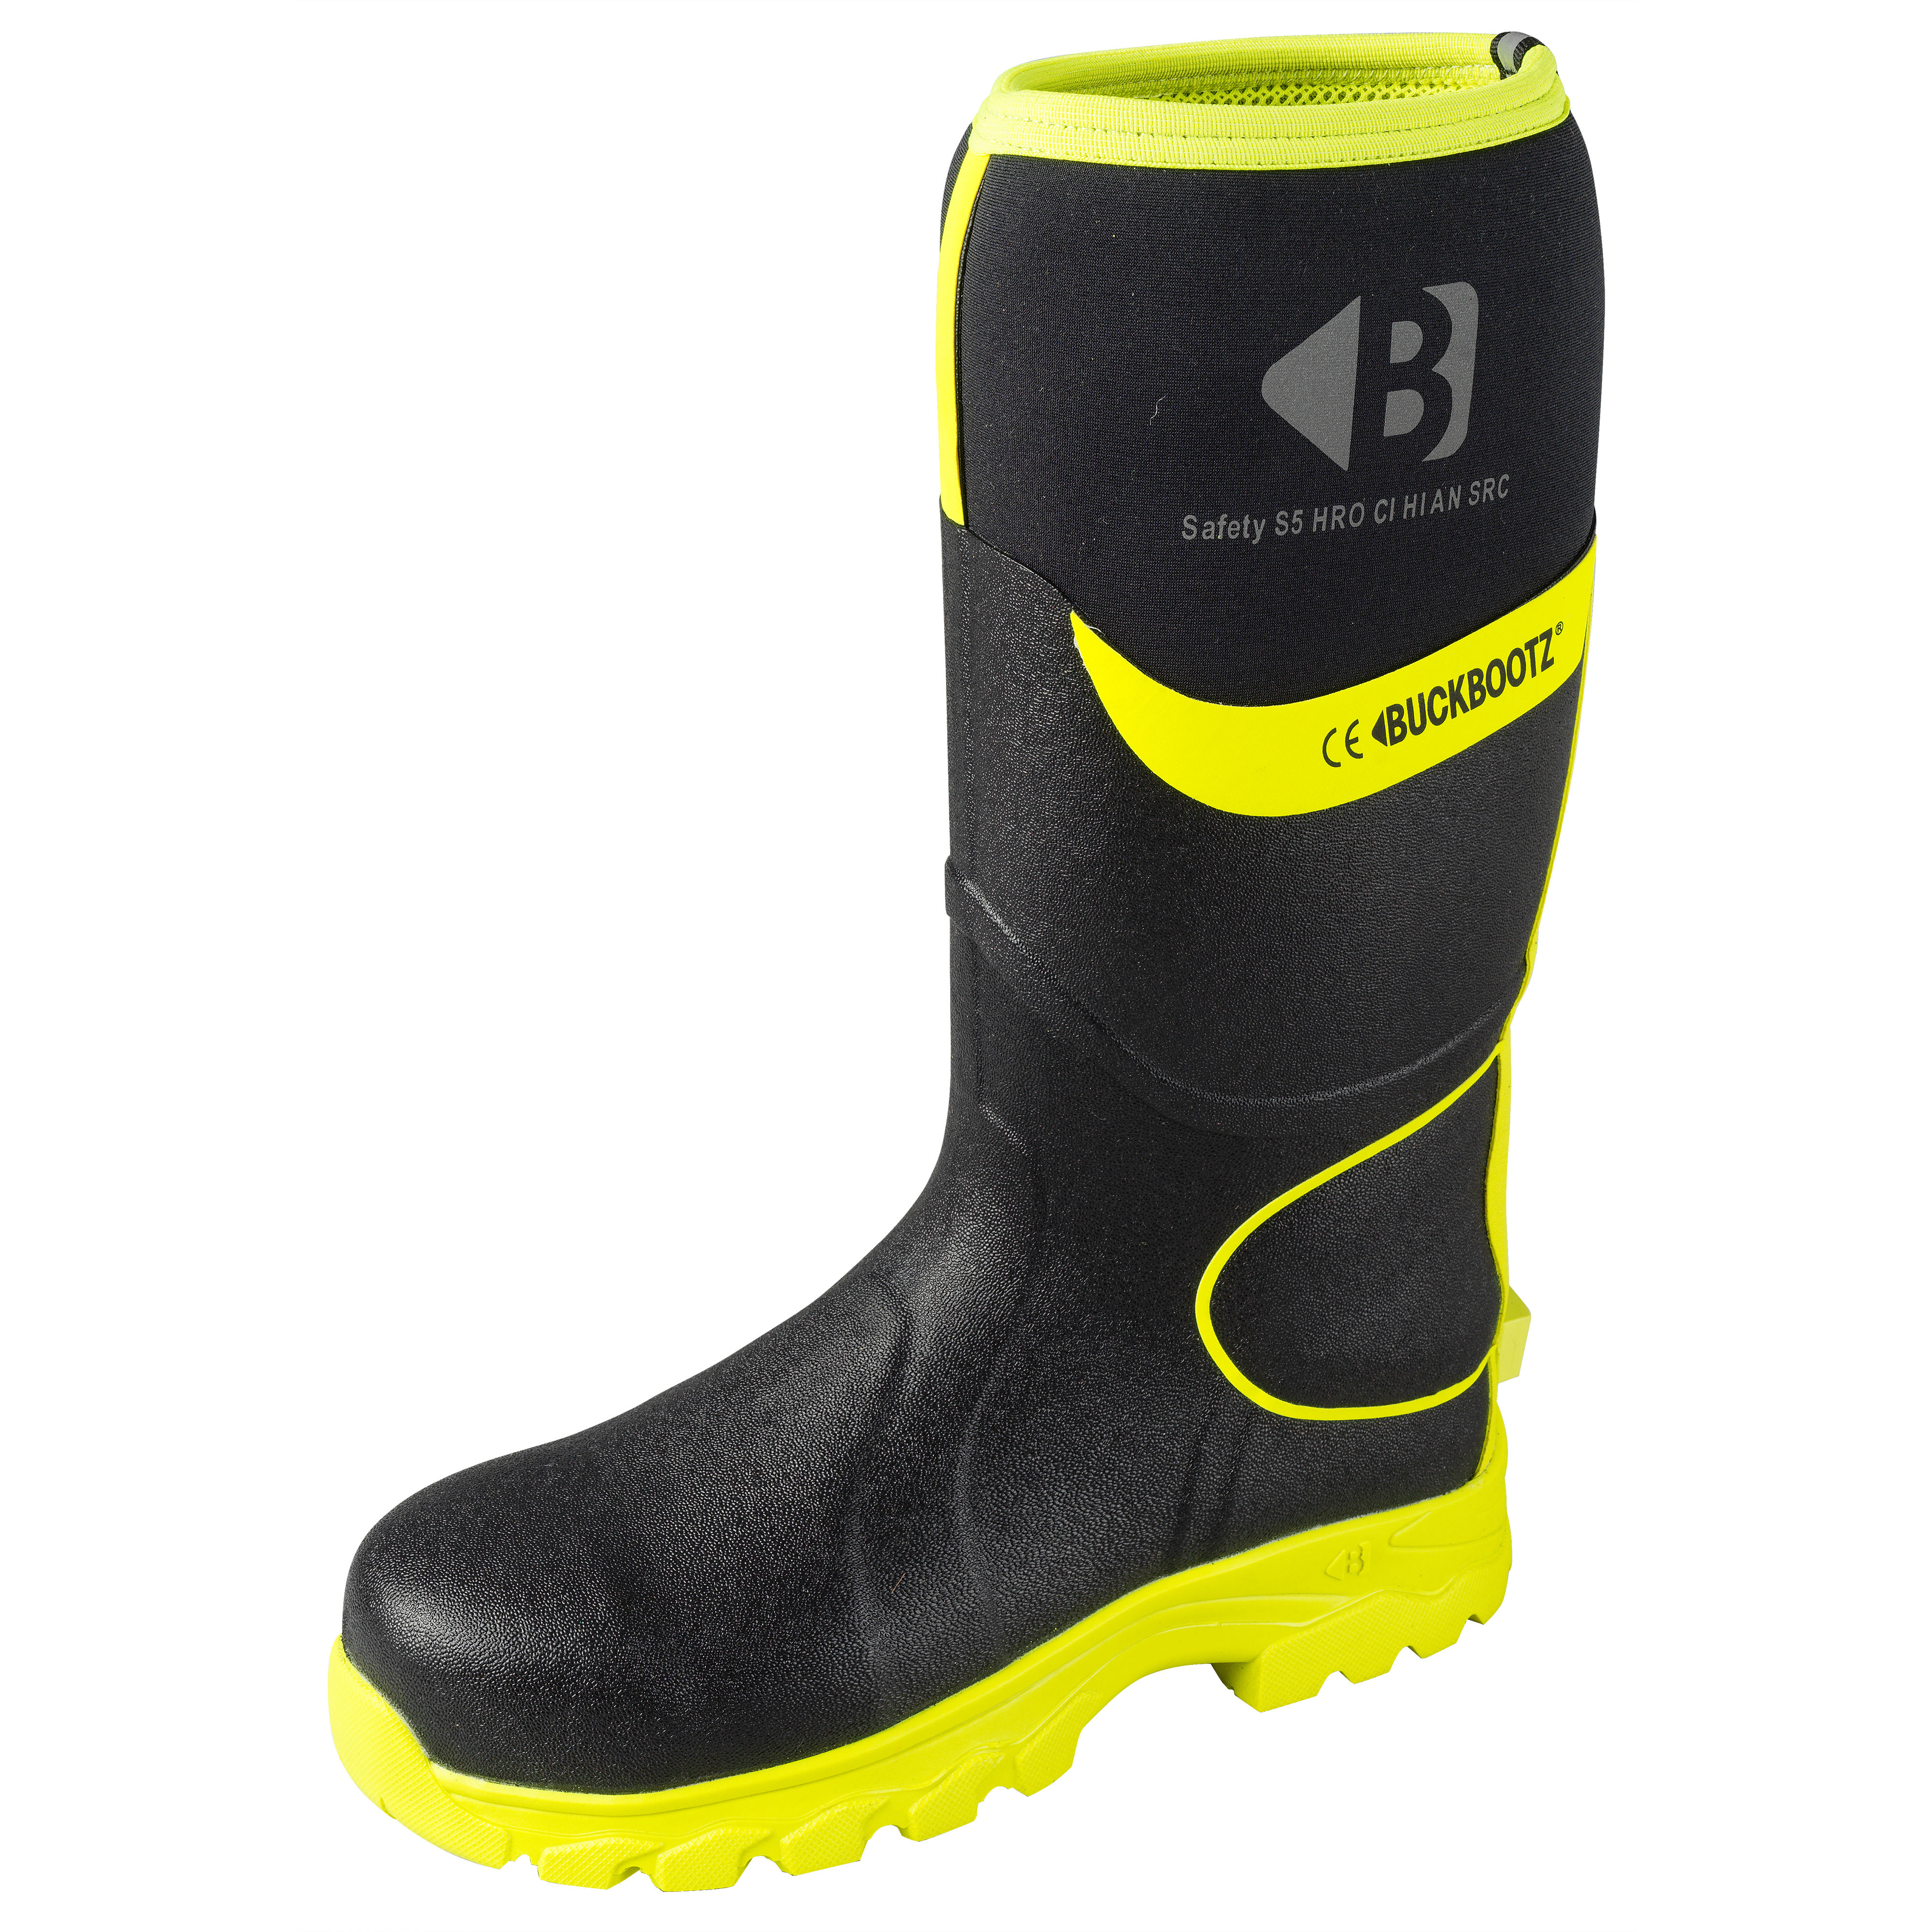 Buckbootz Hi-Vis Safety Wellington Boots Black/Yellow - BBZ8000BKYL